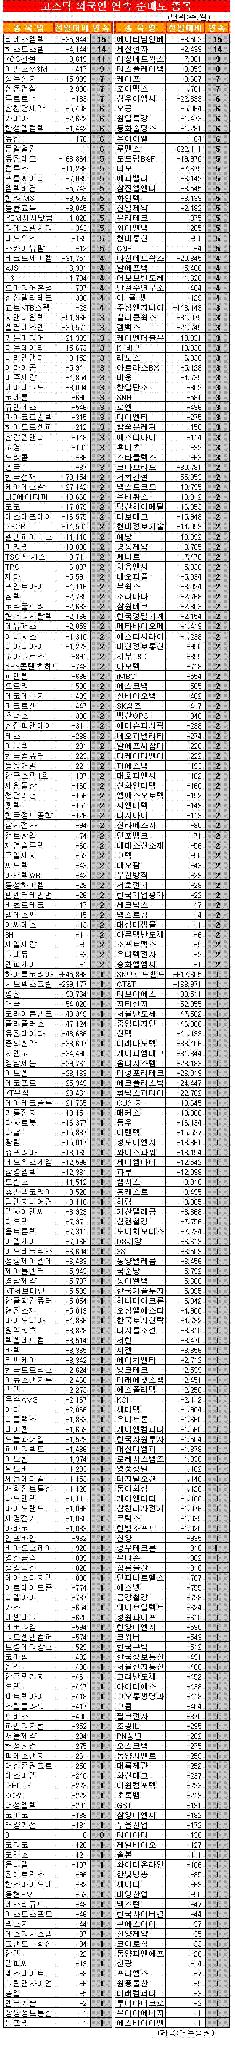 [표]코스닥 외국인 연속 순매도 종목-5일